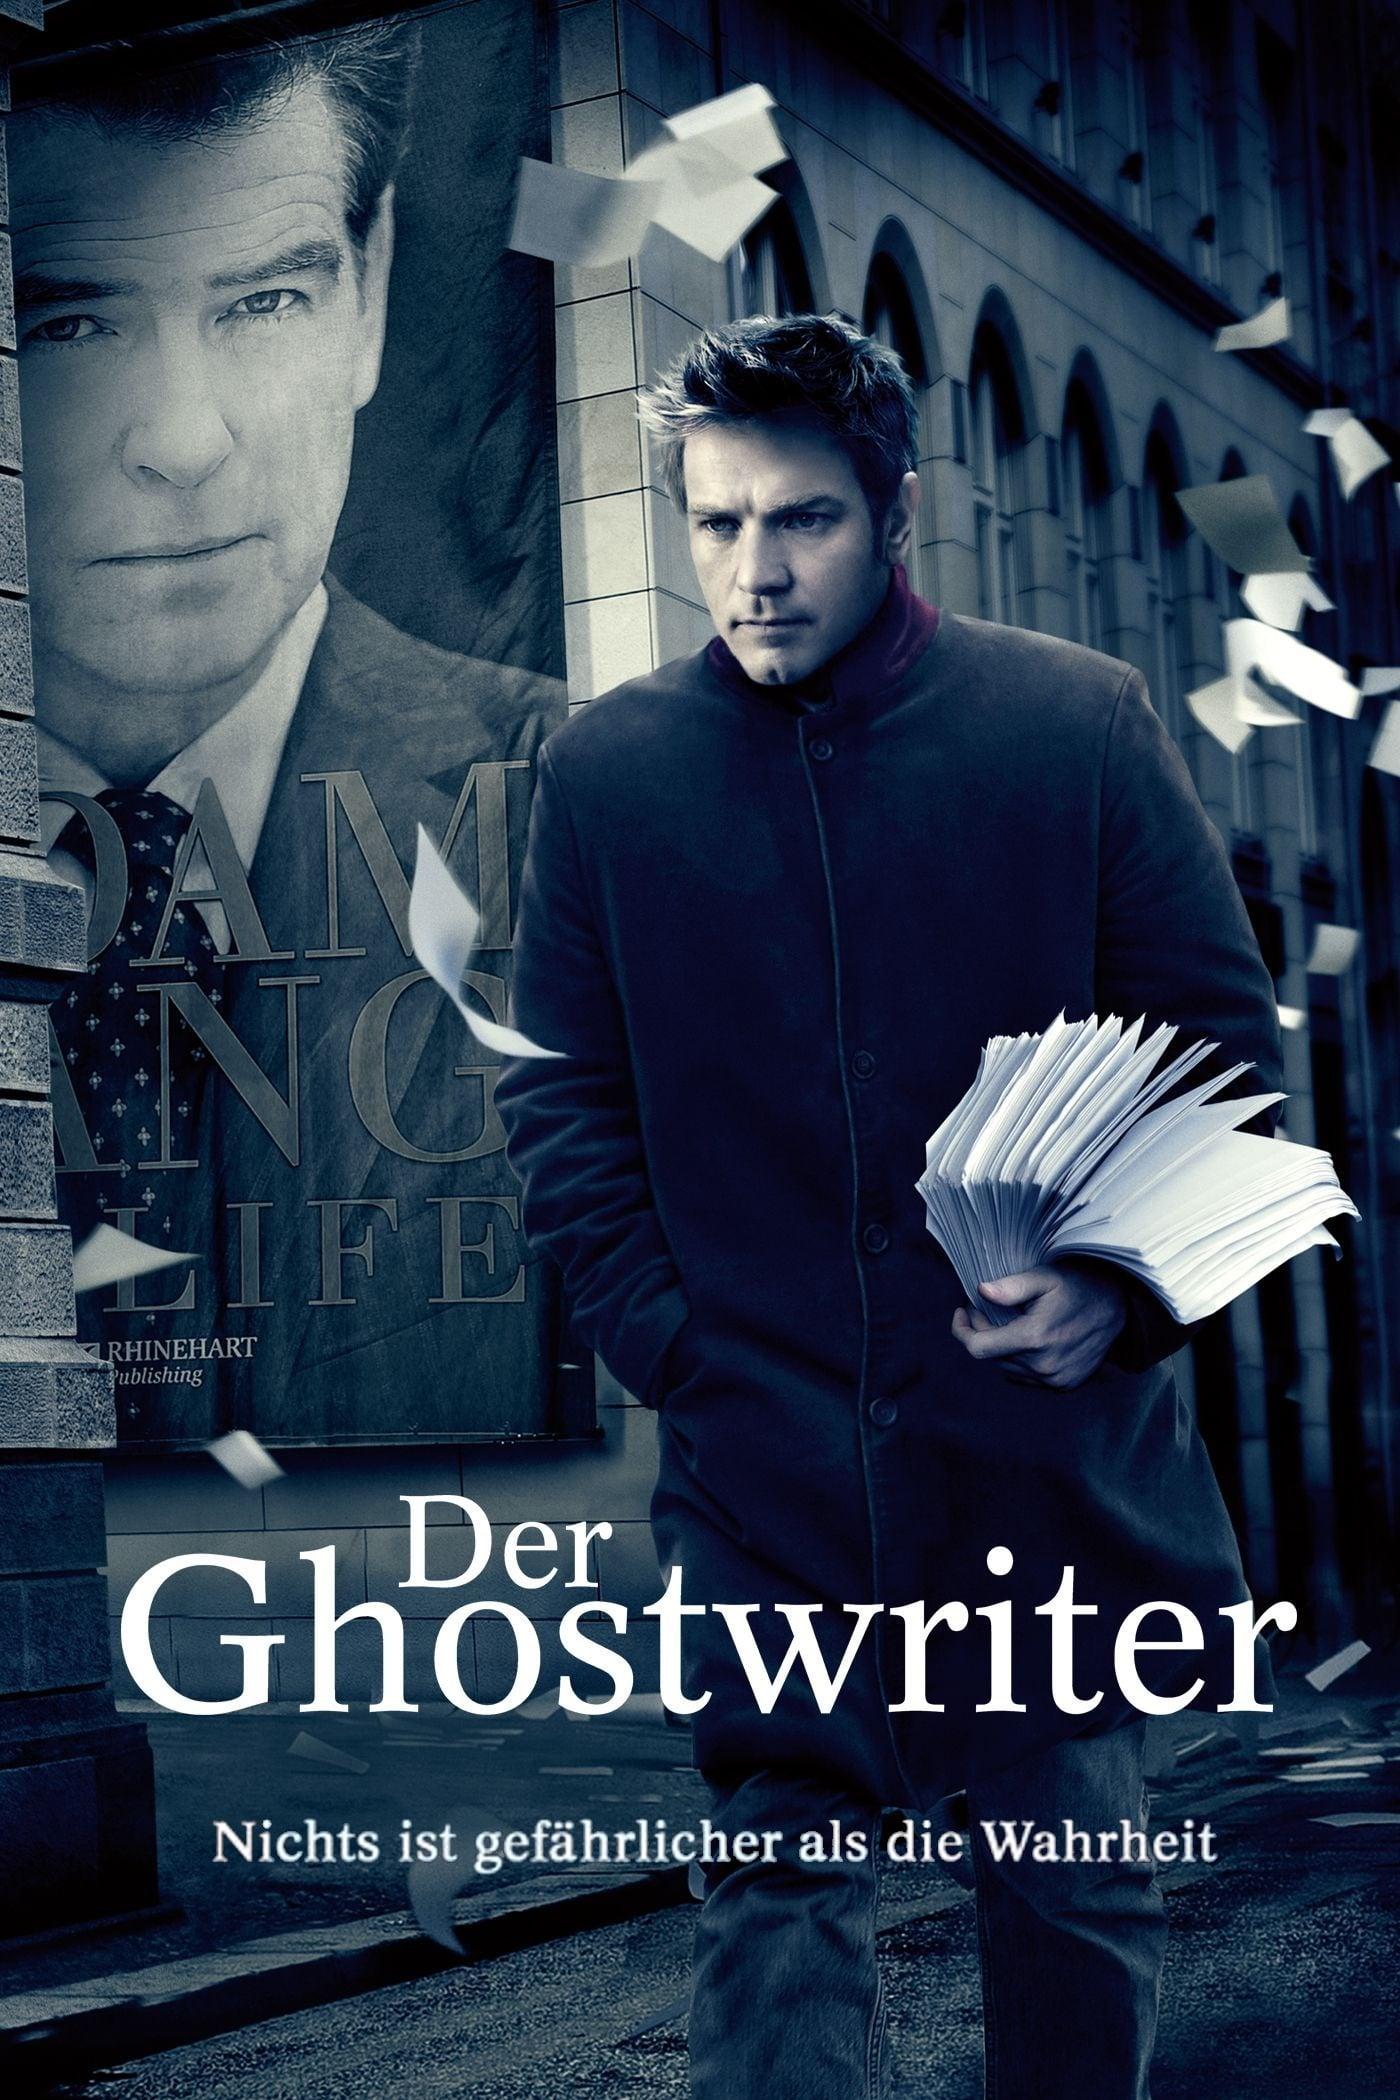 Der Ghostwriter poster